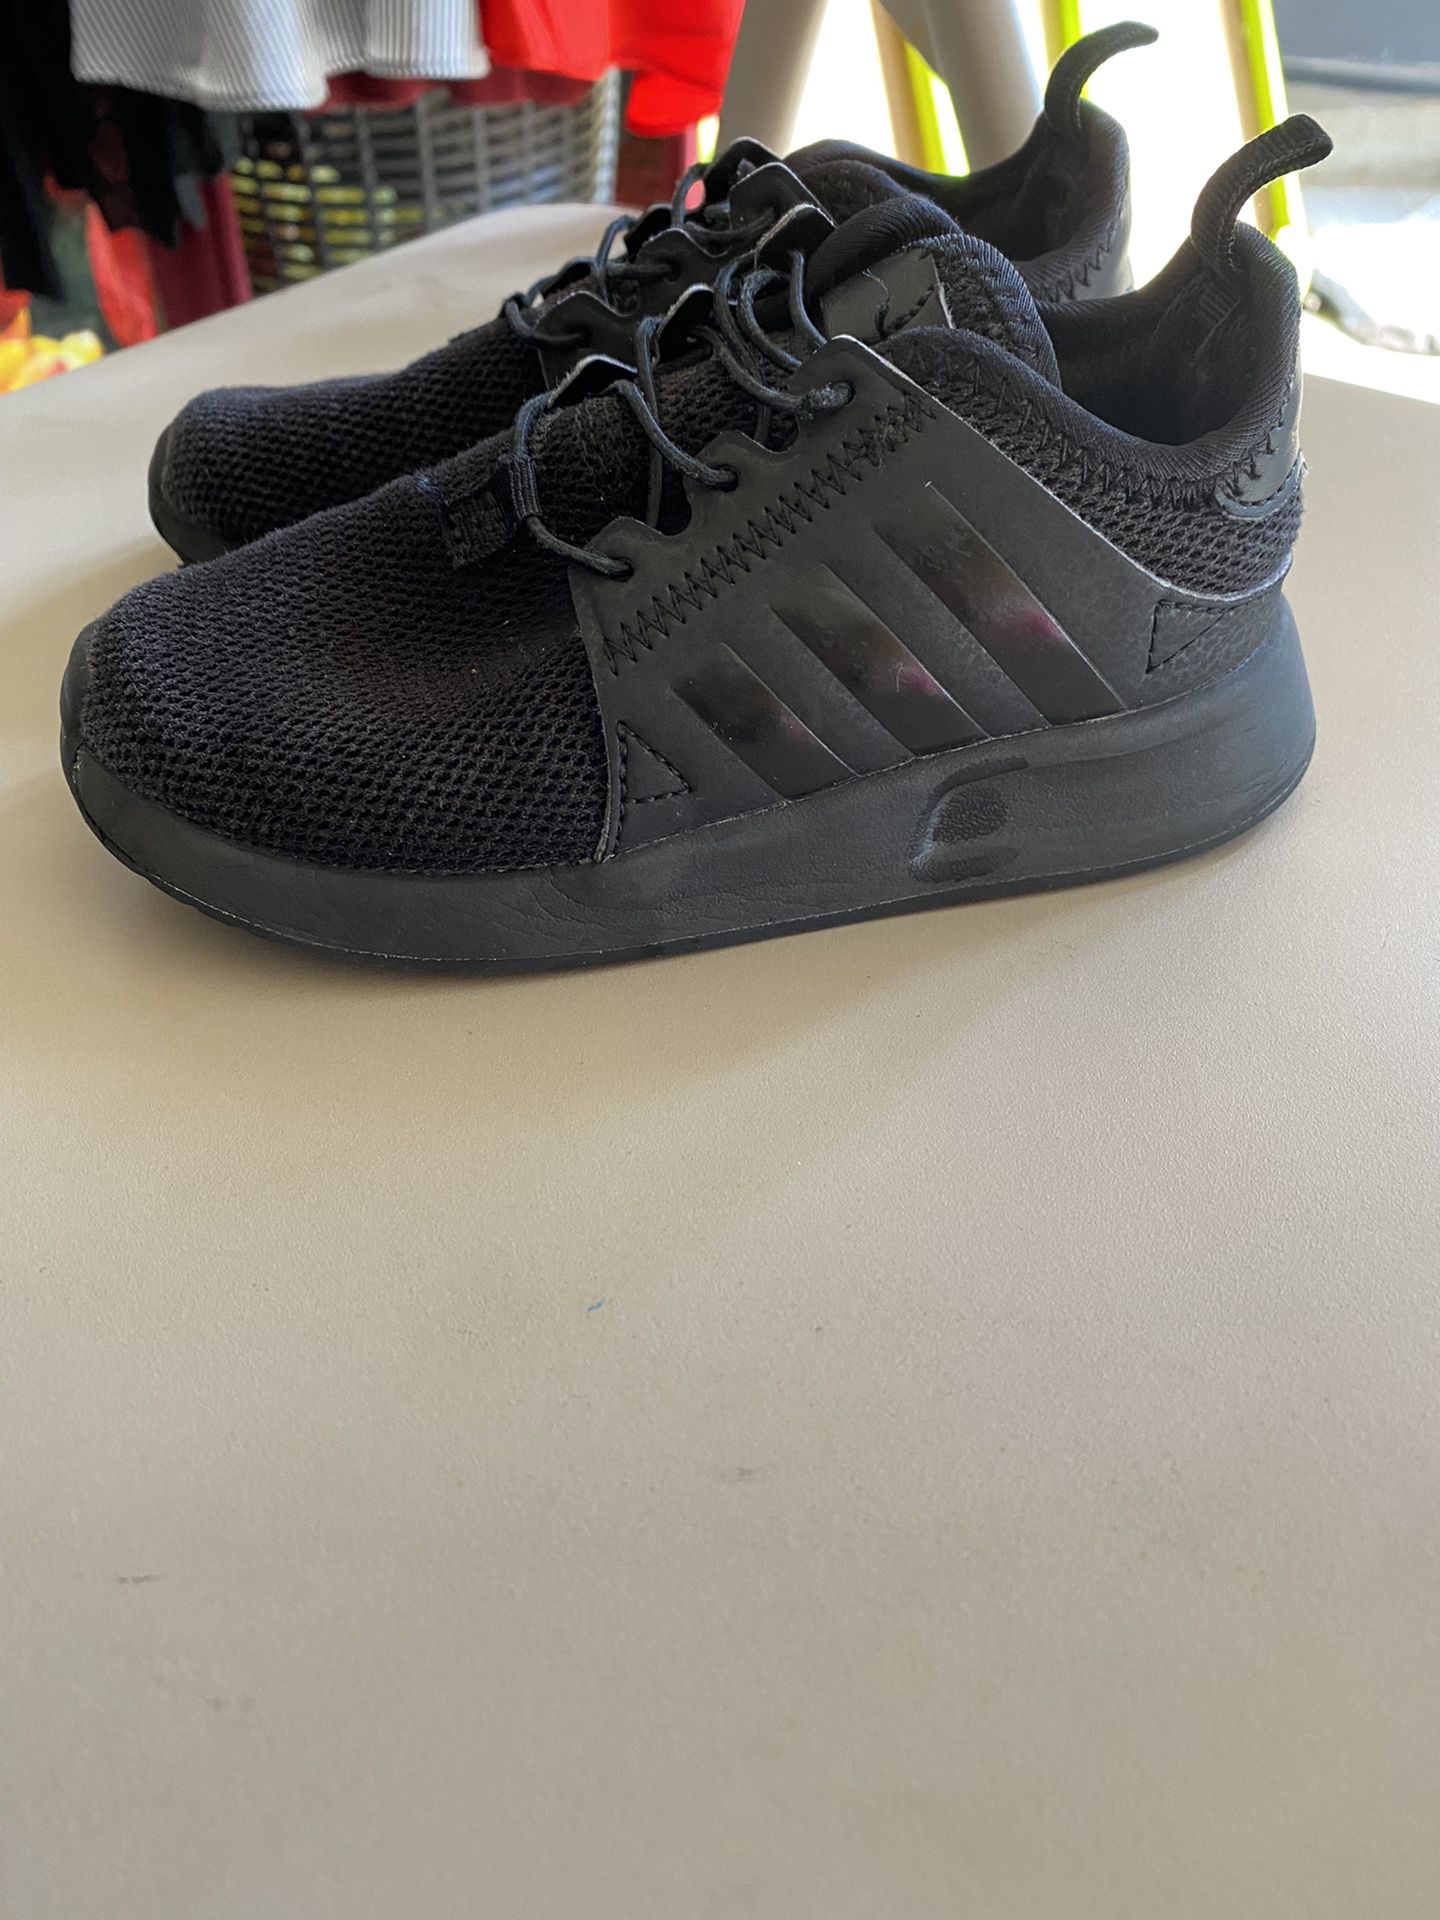 Adidas Black Size 9c Toddler $10